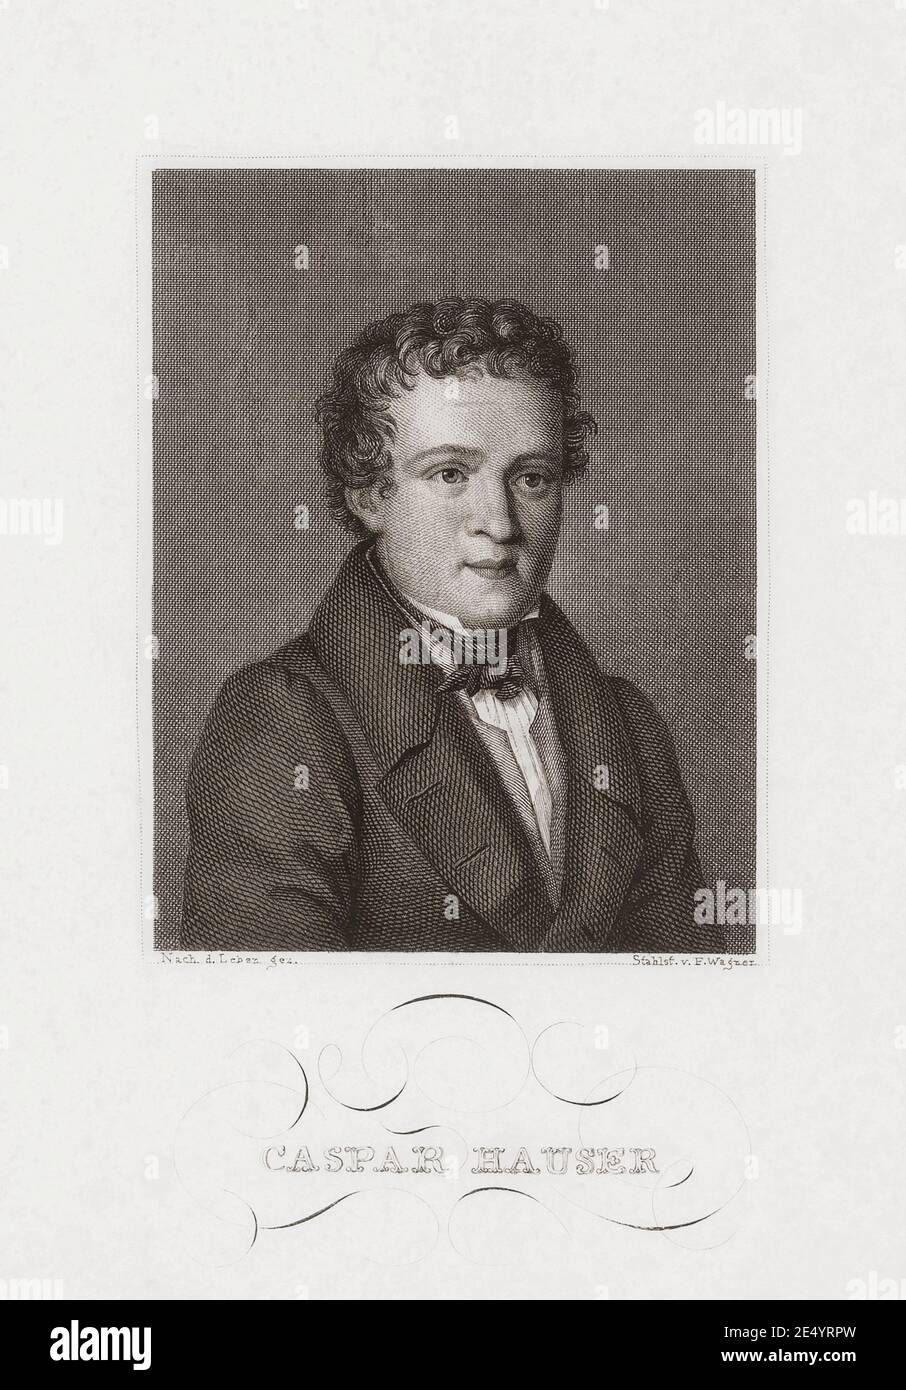 Kaspar Hauser, c. 1812 - 1833. Hauser erschien 1828 auf mysteriöse Weise und behauptete, er sei seit seiner Kindheit in einem Kerker eingesperrt gewesen. Sein seltsamer Fall prickelte öffentliche Phantasie. Unter den Gerüchten war, dass er der Erbprinz von Baden war. Sein Tod durch eine Stichwunde im Jahr 1833 trug zu seinem Fall bei: Einige dachten, er sei ermordet worden, andere hätten ihn erstochen. Nach einem Werk von Friedrich Wagner. Stockfoto